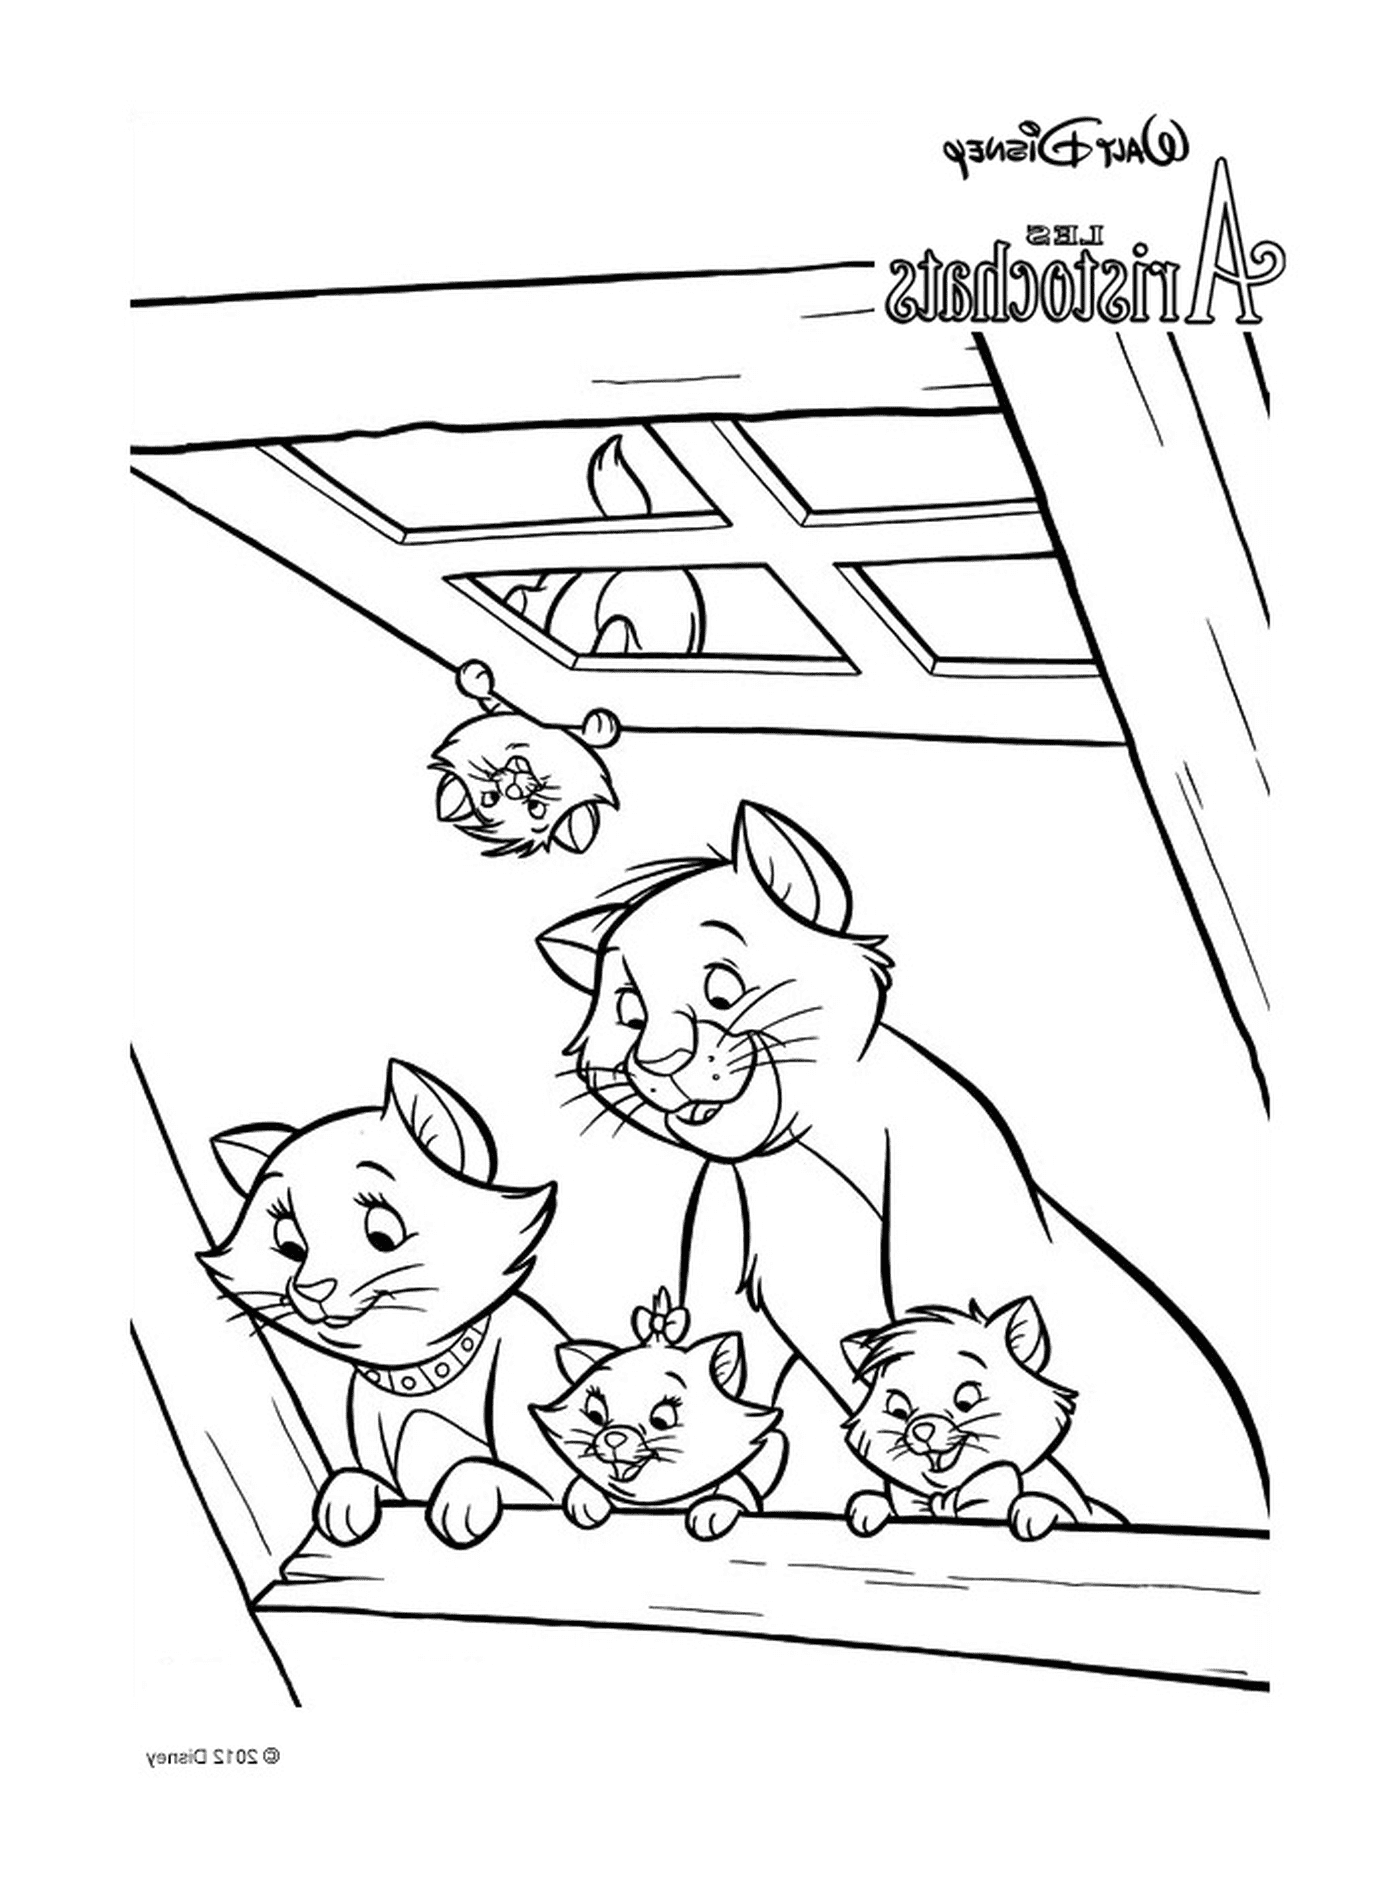  Eine Gruppe Katzen sitzt auf dem Dach eines Gebäudes 